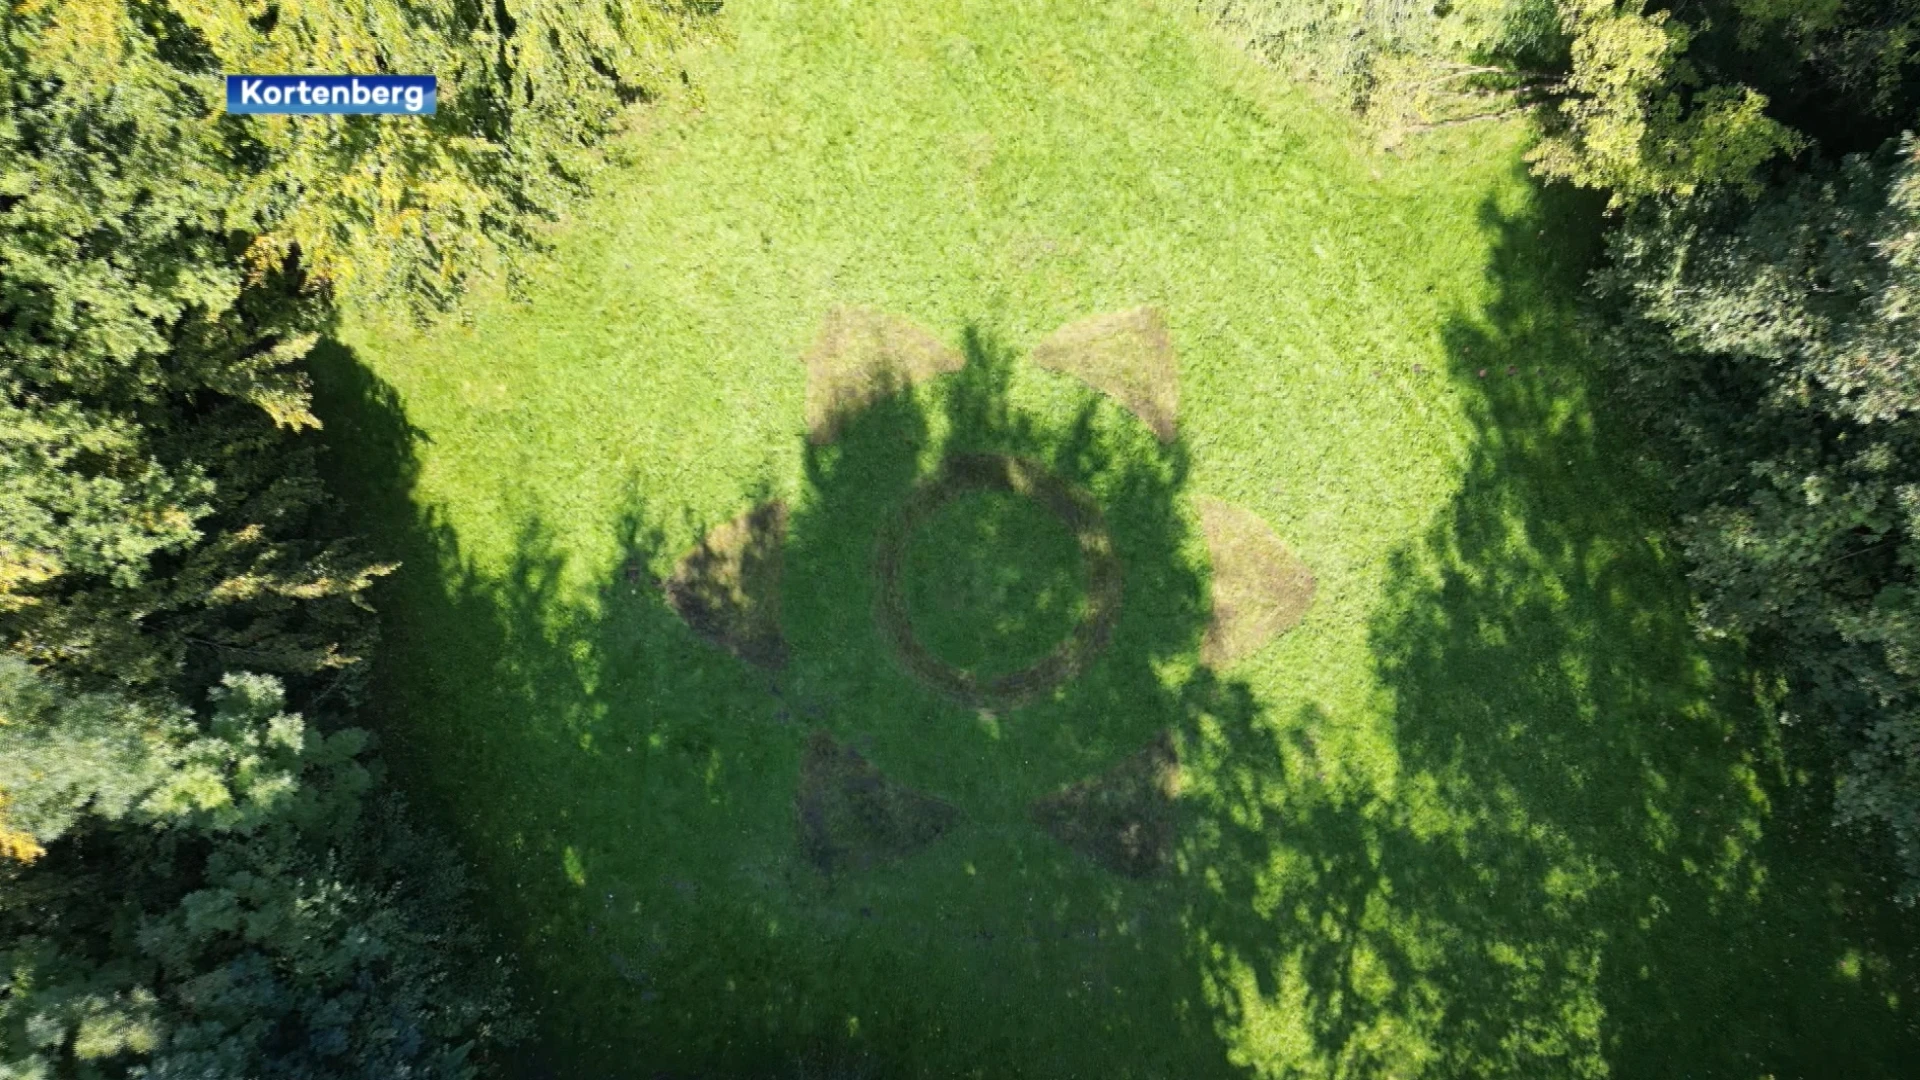 Kunstenaar Jan Loenders en mensen met beperking maken grote grascirkel aan Oude Abdij in Kortenberg: "Iedereen mag dit bezoeken tot 1 oktober, daarna is het alleen nog een herinnering"